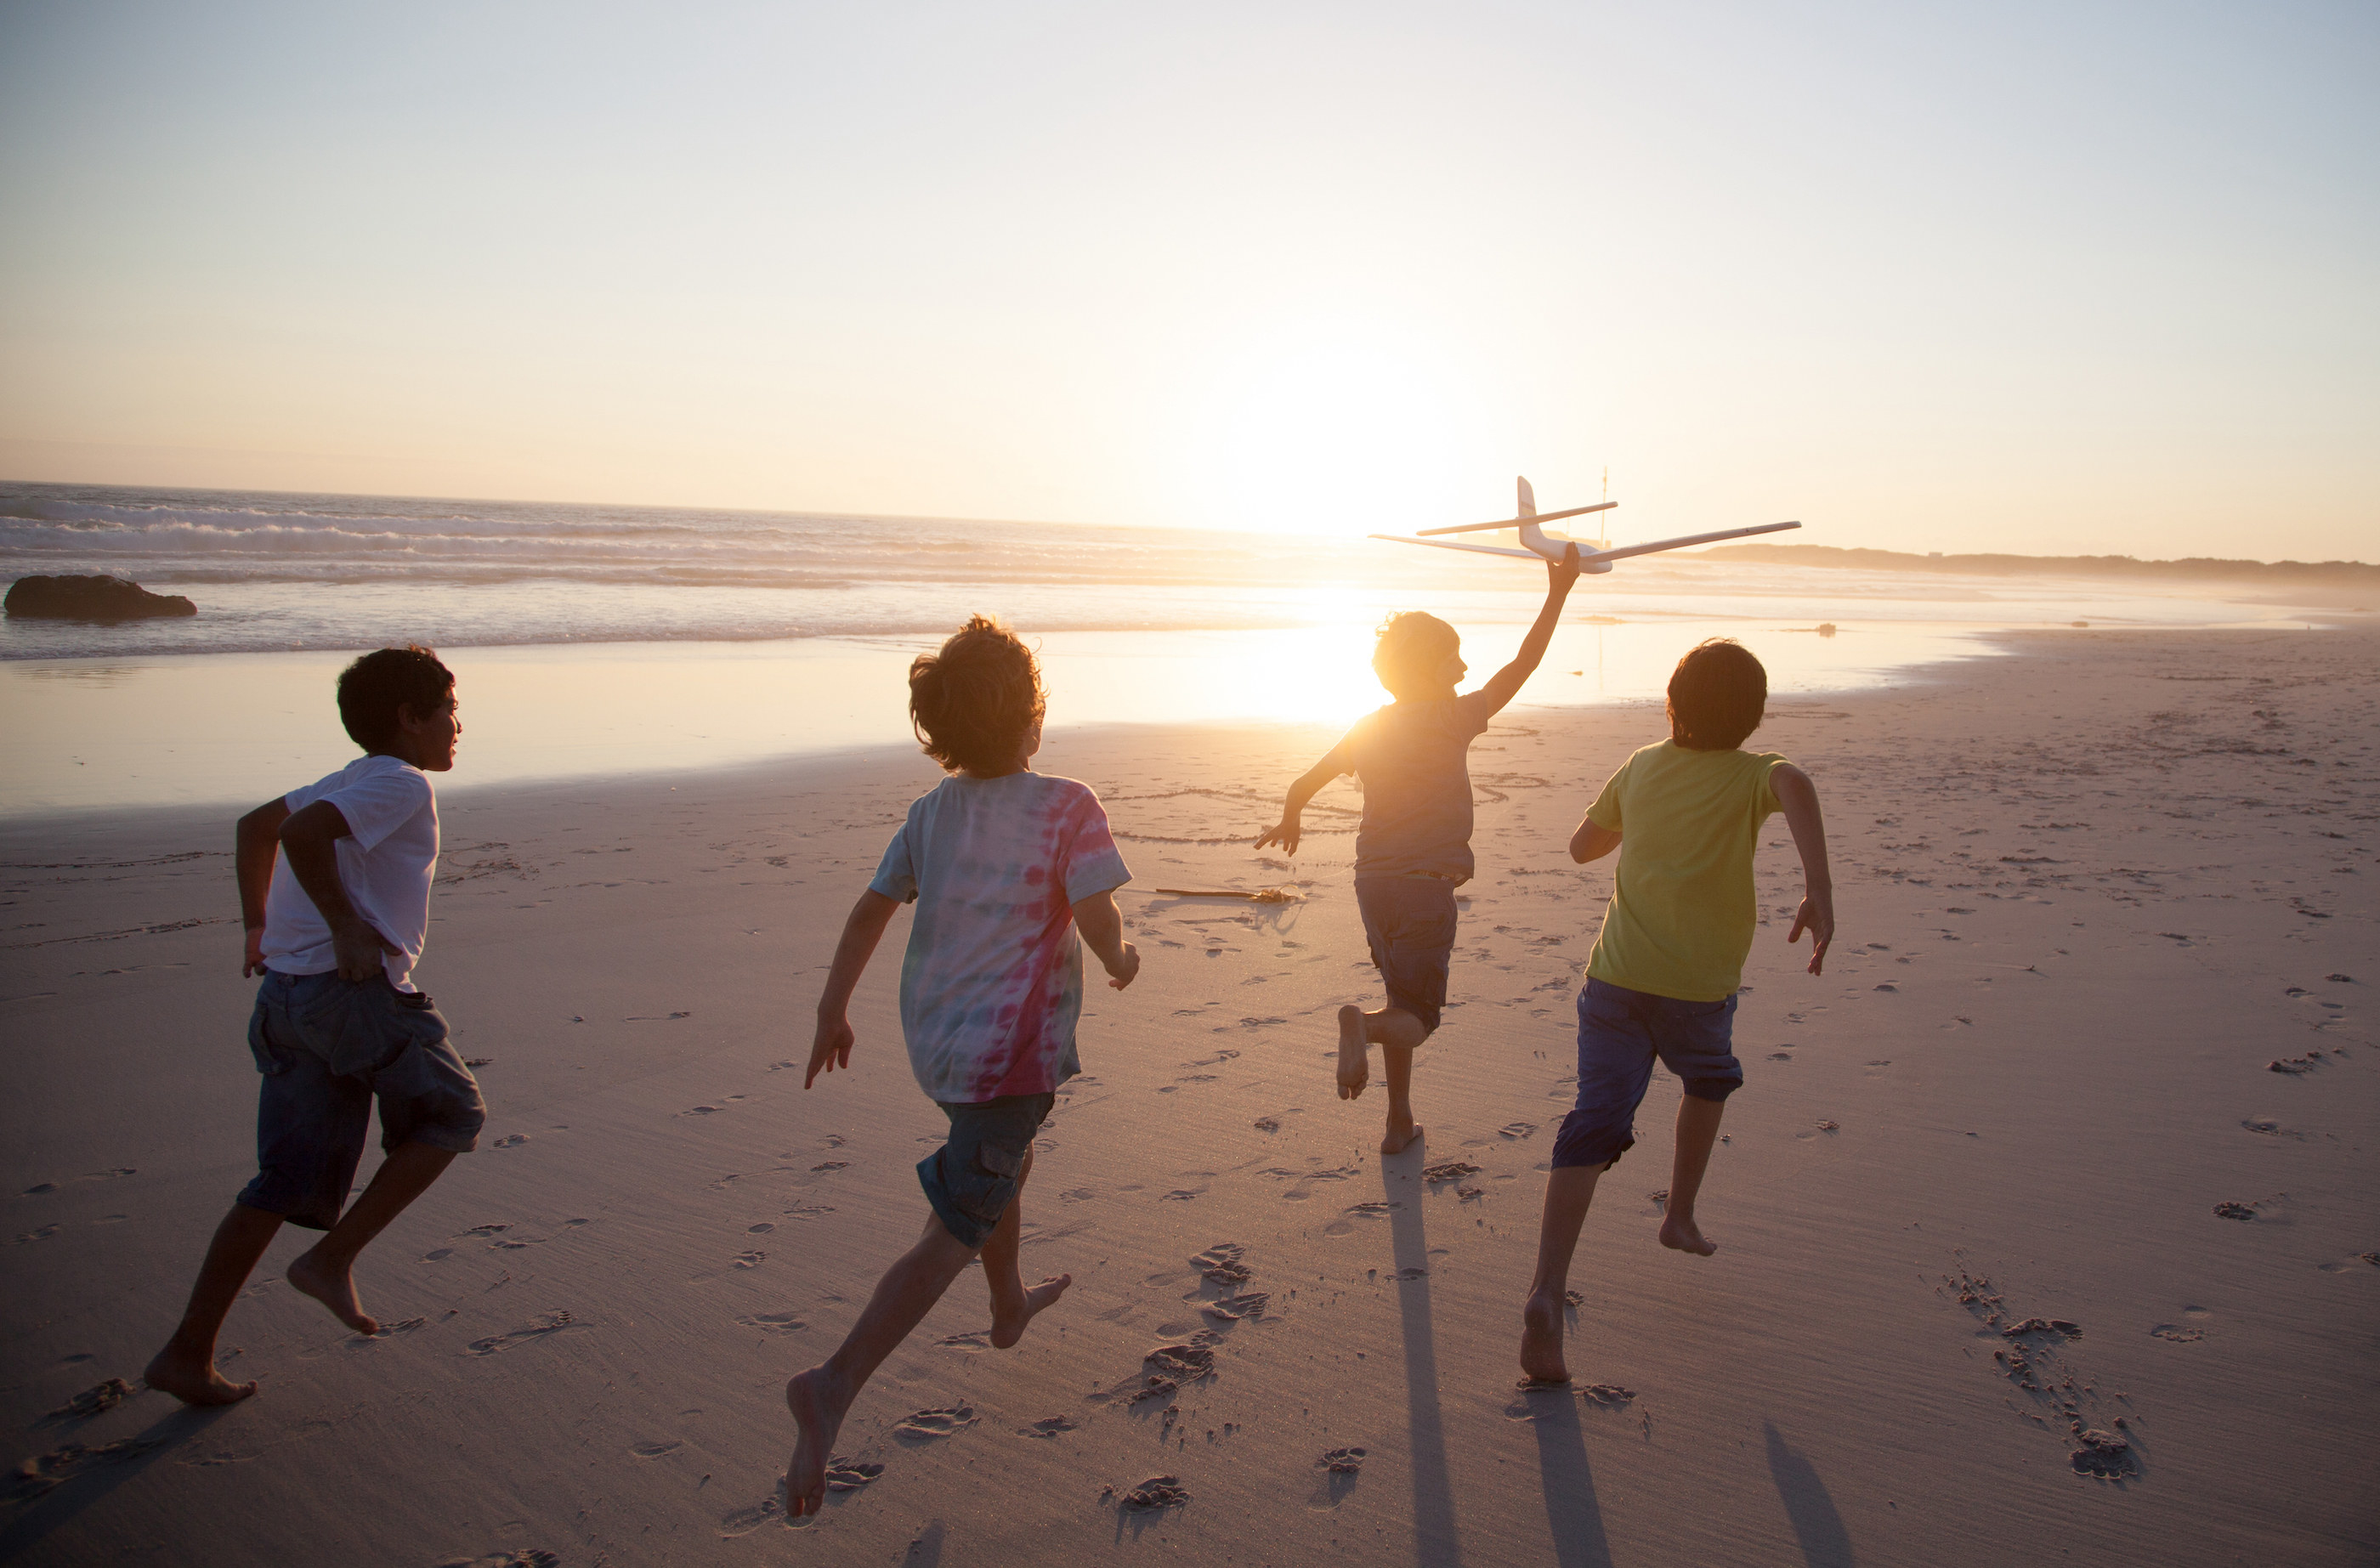 Children running along the beach